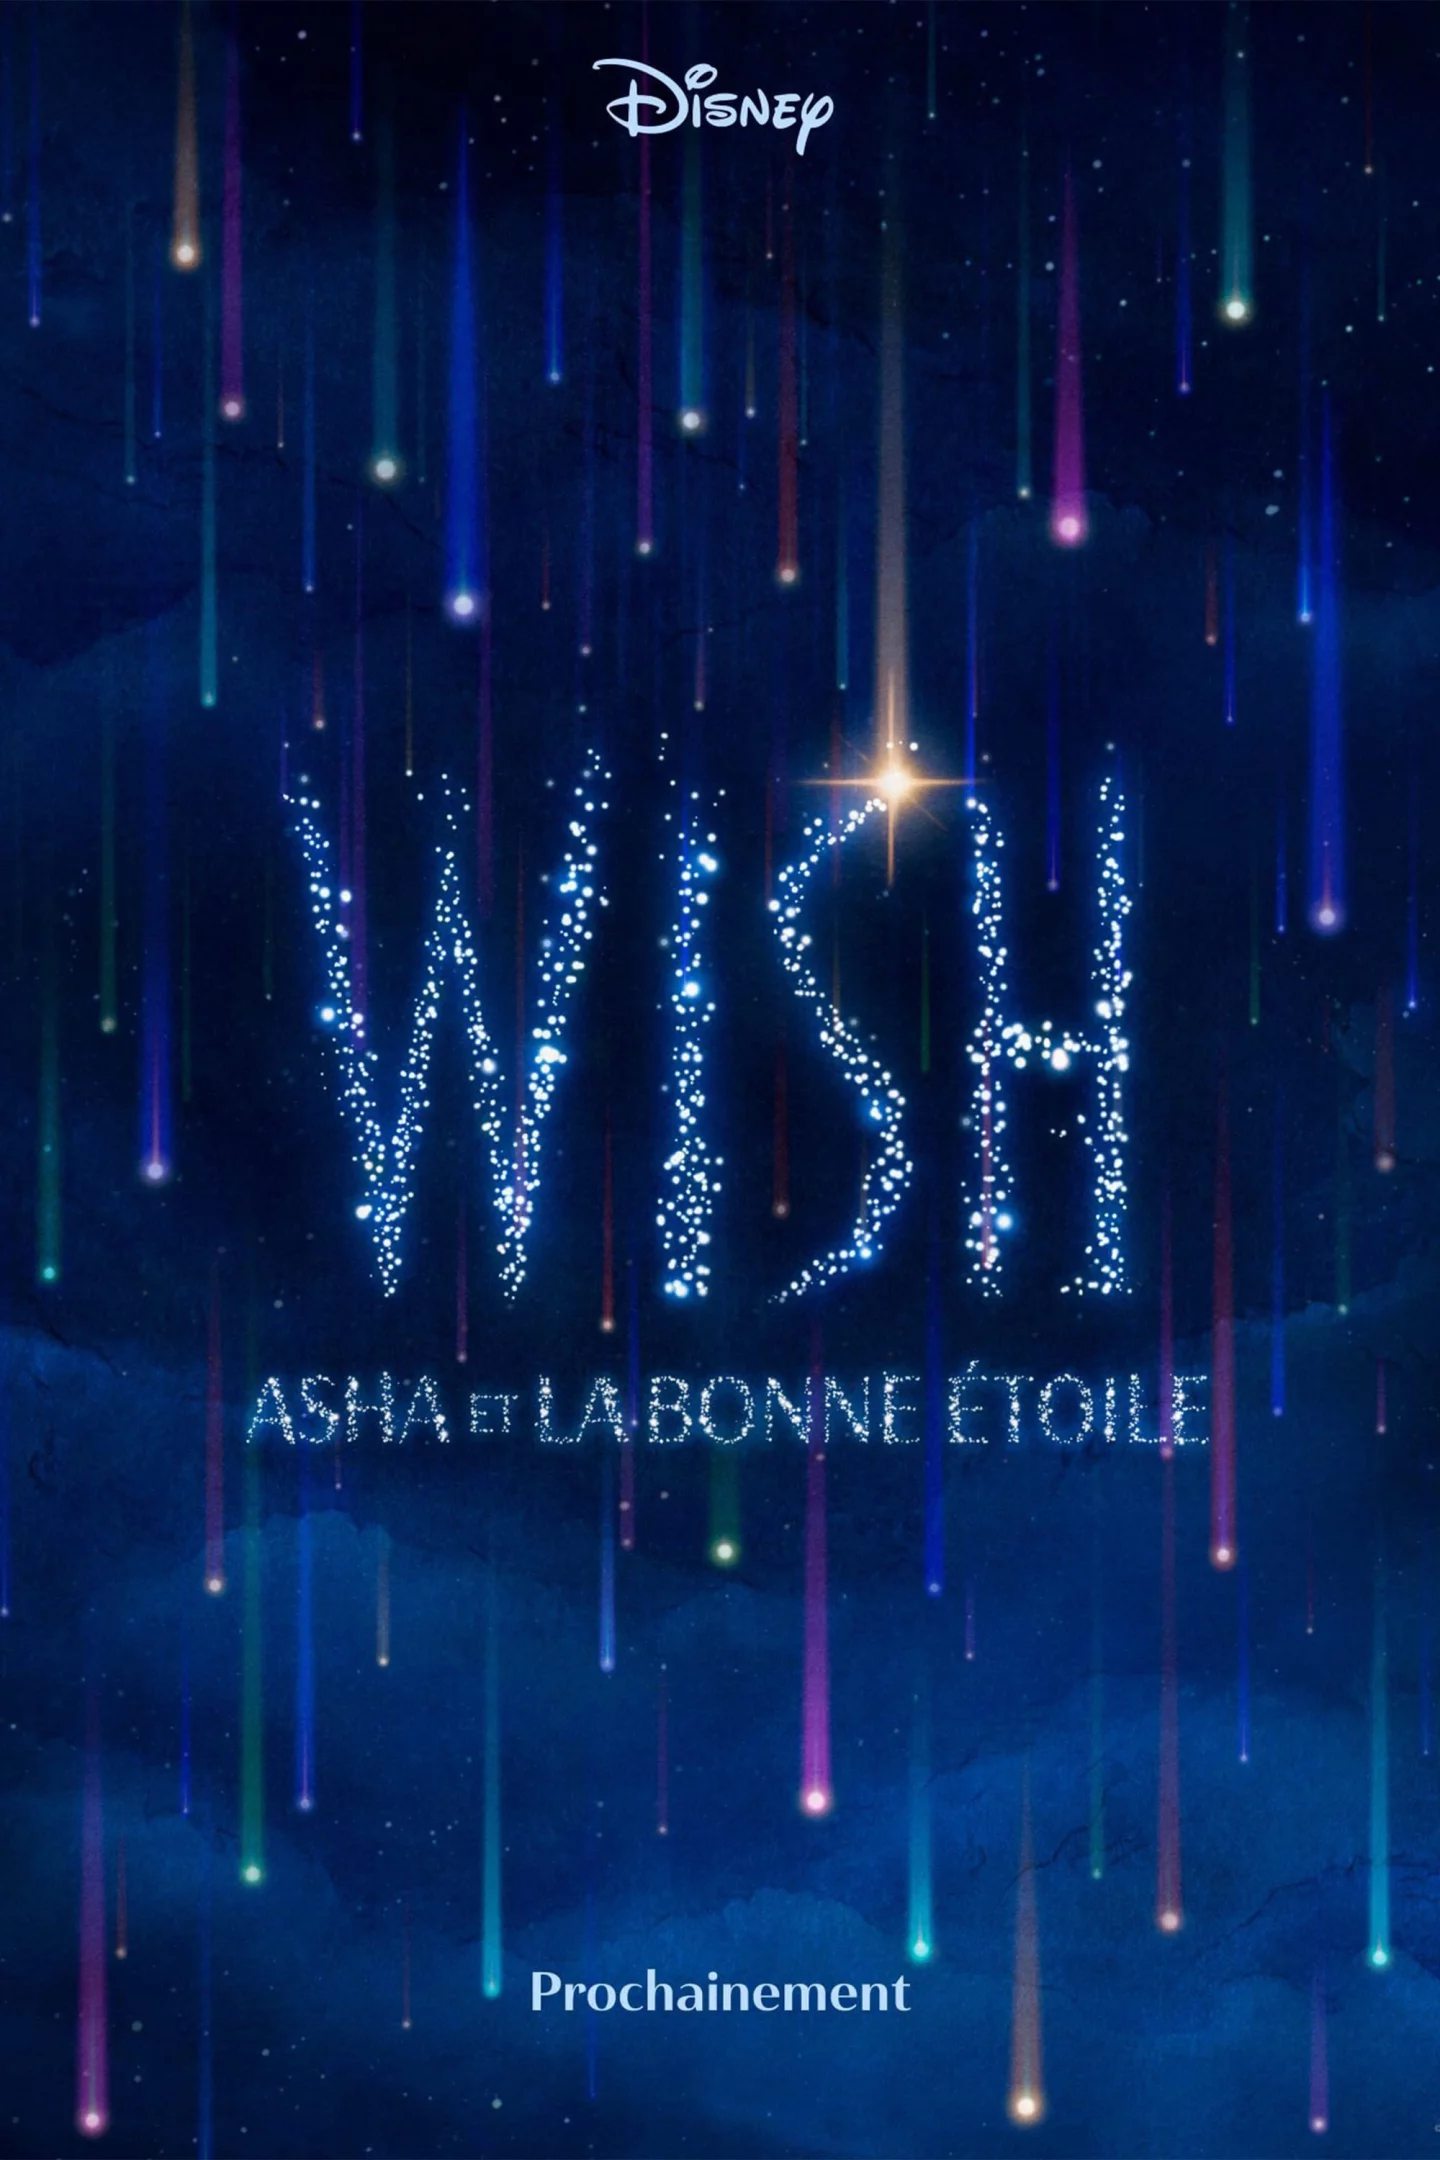 Photo du film : Wish - Asha et la bonne étoile